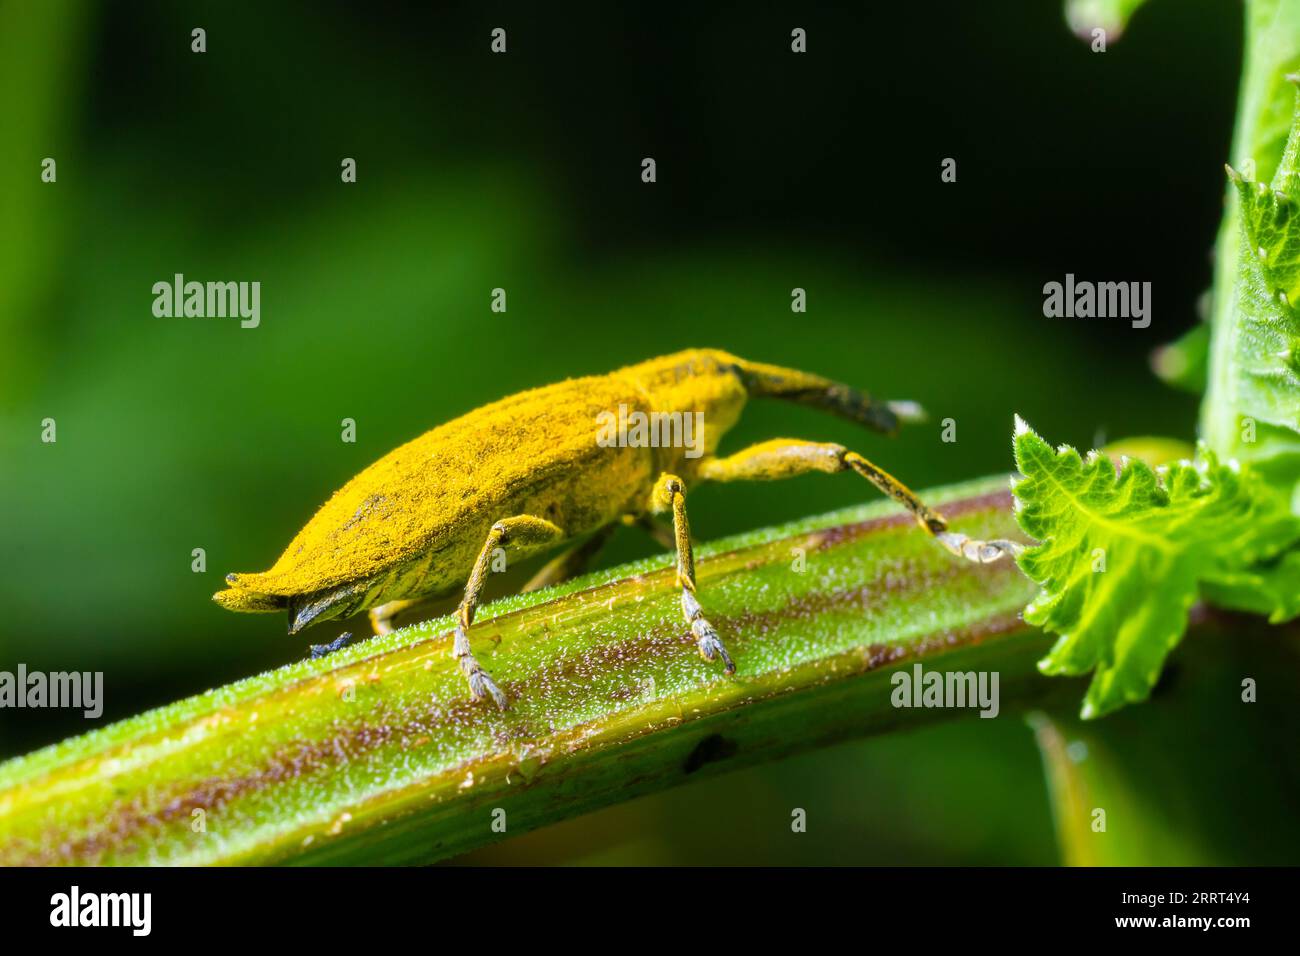 Lo scarabeo, noto anche come Nunus, è uno scarabeo che appartiene alla superfamiglia Curculionoidea, nota per i suoi snout.insects animali allungati Foto Stock